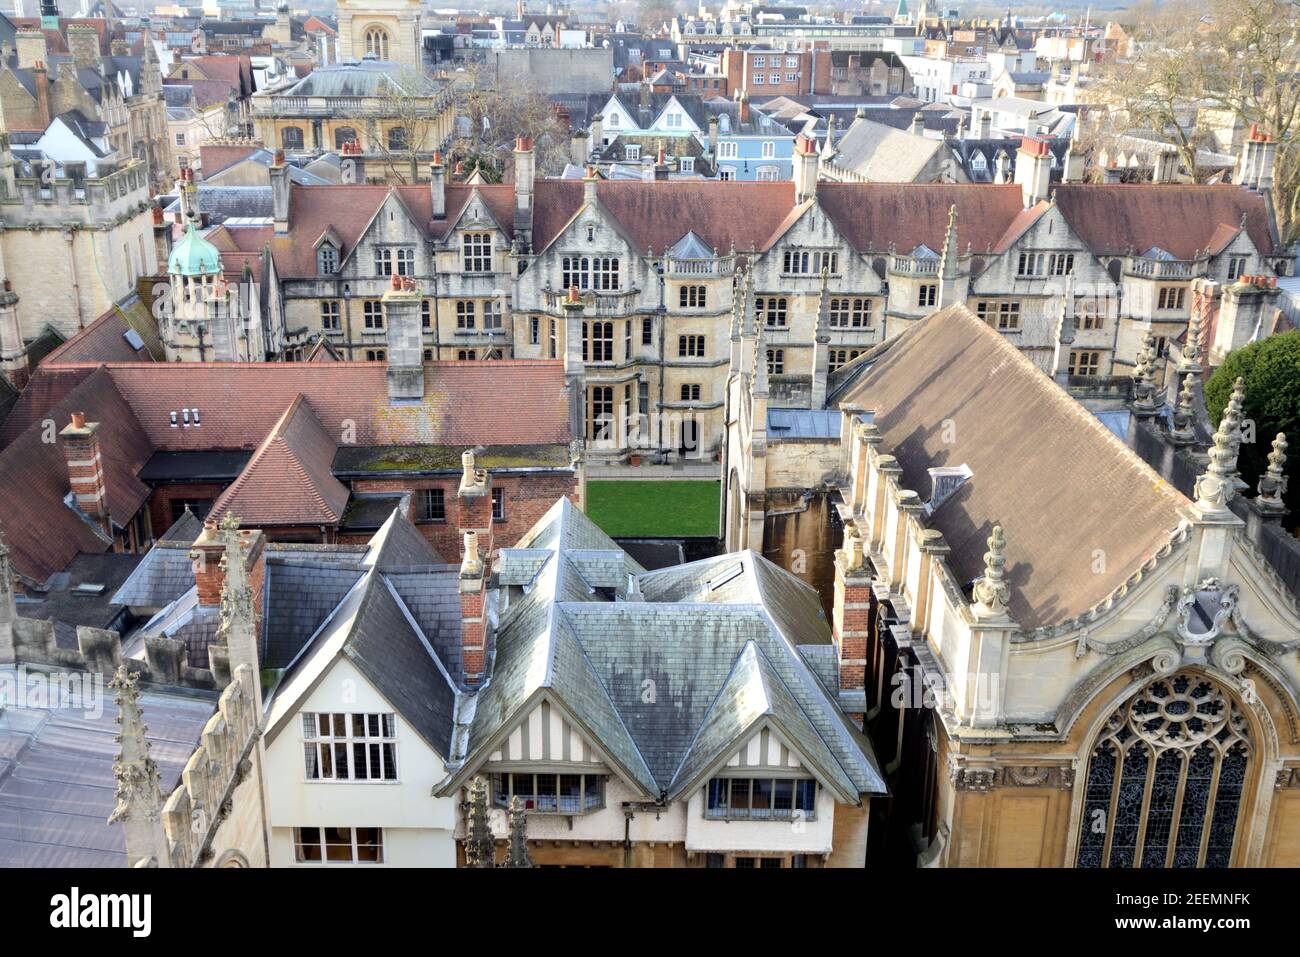 Vue aérienne ou vue à angle élevé sur les toits de la vieille ville d'Oxford et du Brasenose College, Université d'Oxford, Oxfordshire, Angleterre, Royaume-Uni Banque D'Images